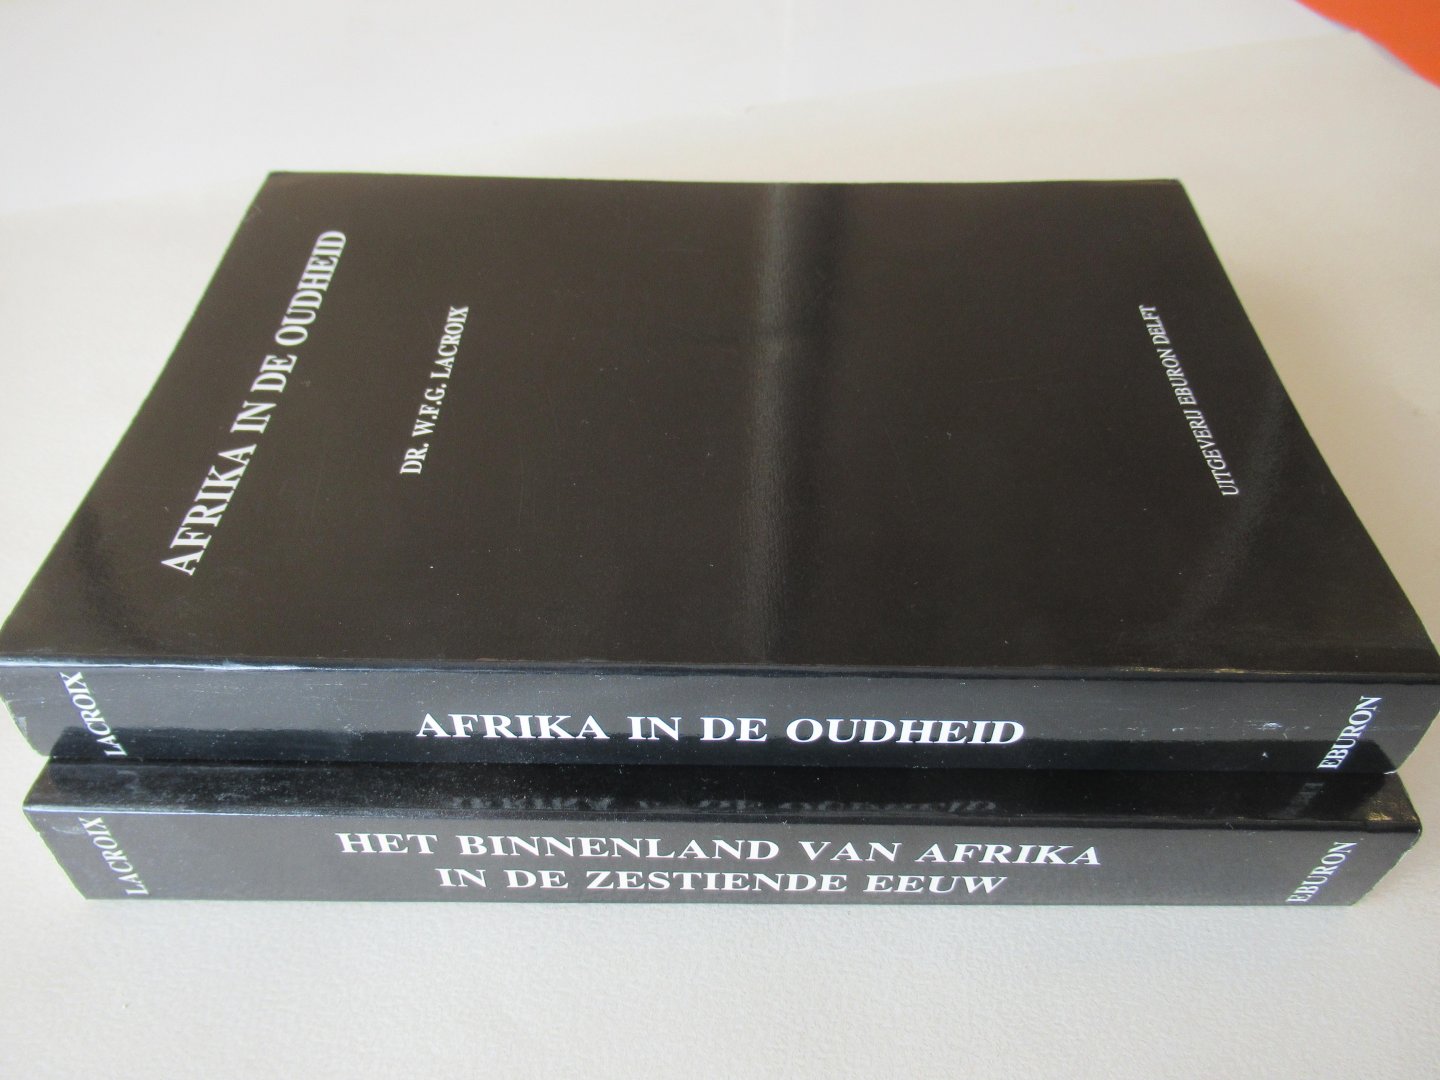 Lacroix W.F.G. - Het binnenland van Afrika in zestiende eeuw + Afrika in de oudheid